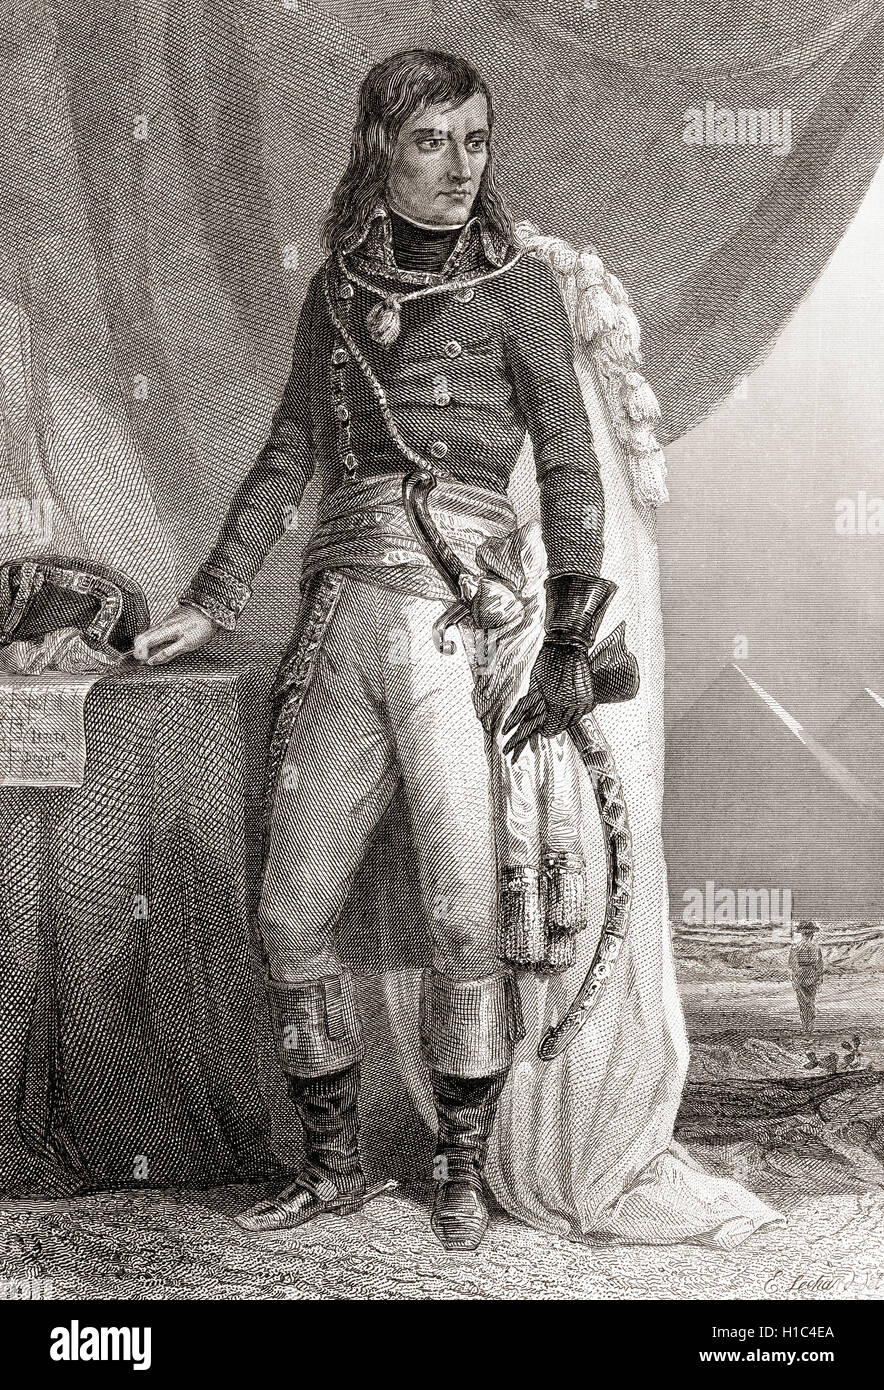 Napoléon Bonaparte, born Napoleone di Buonaparte, 1769 –1821.  French military and political leader. Emperor of the French. Stock Photo